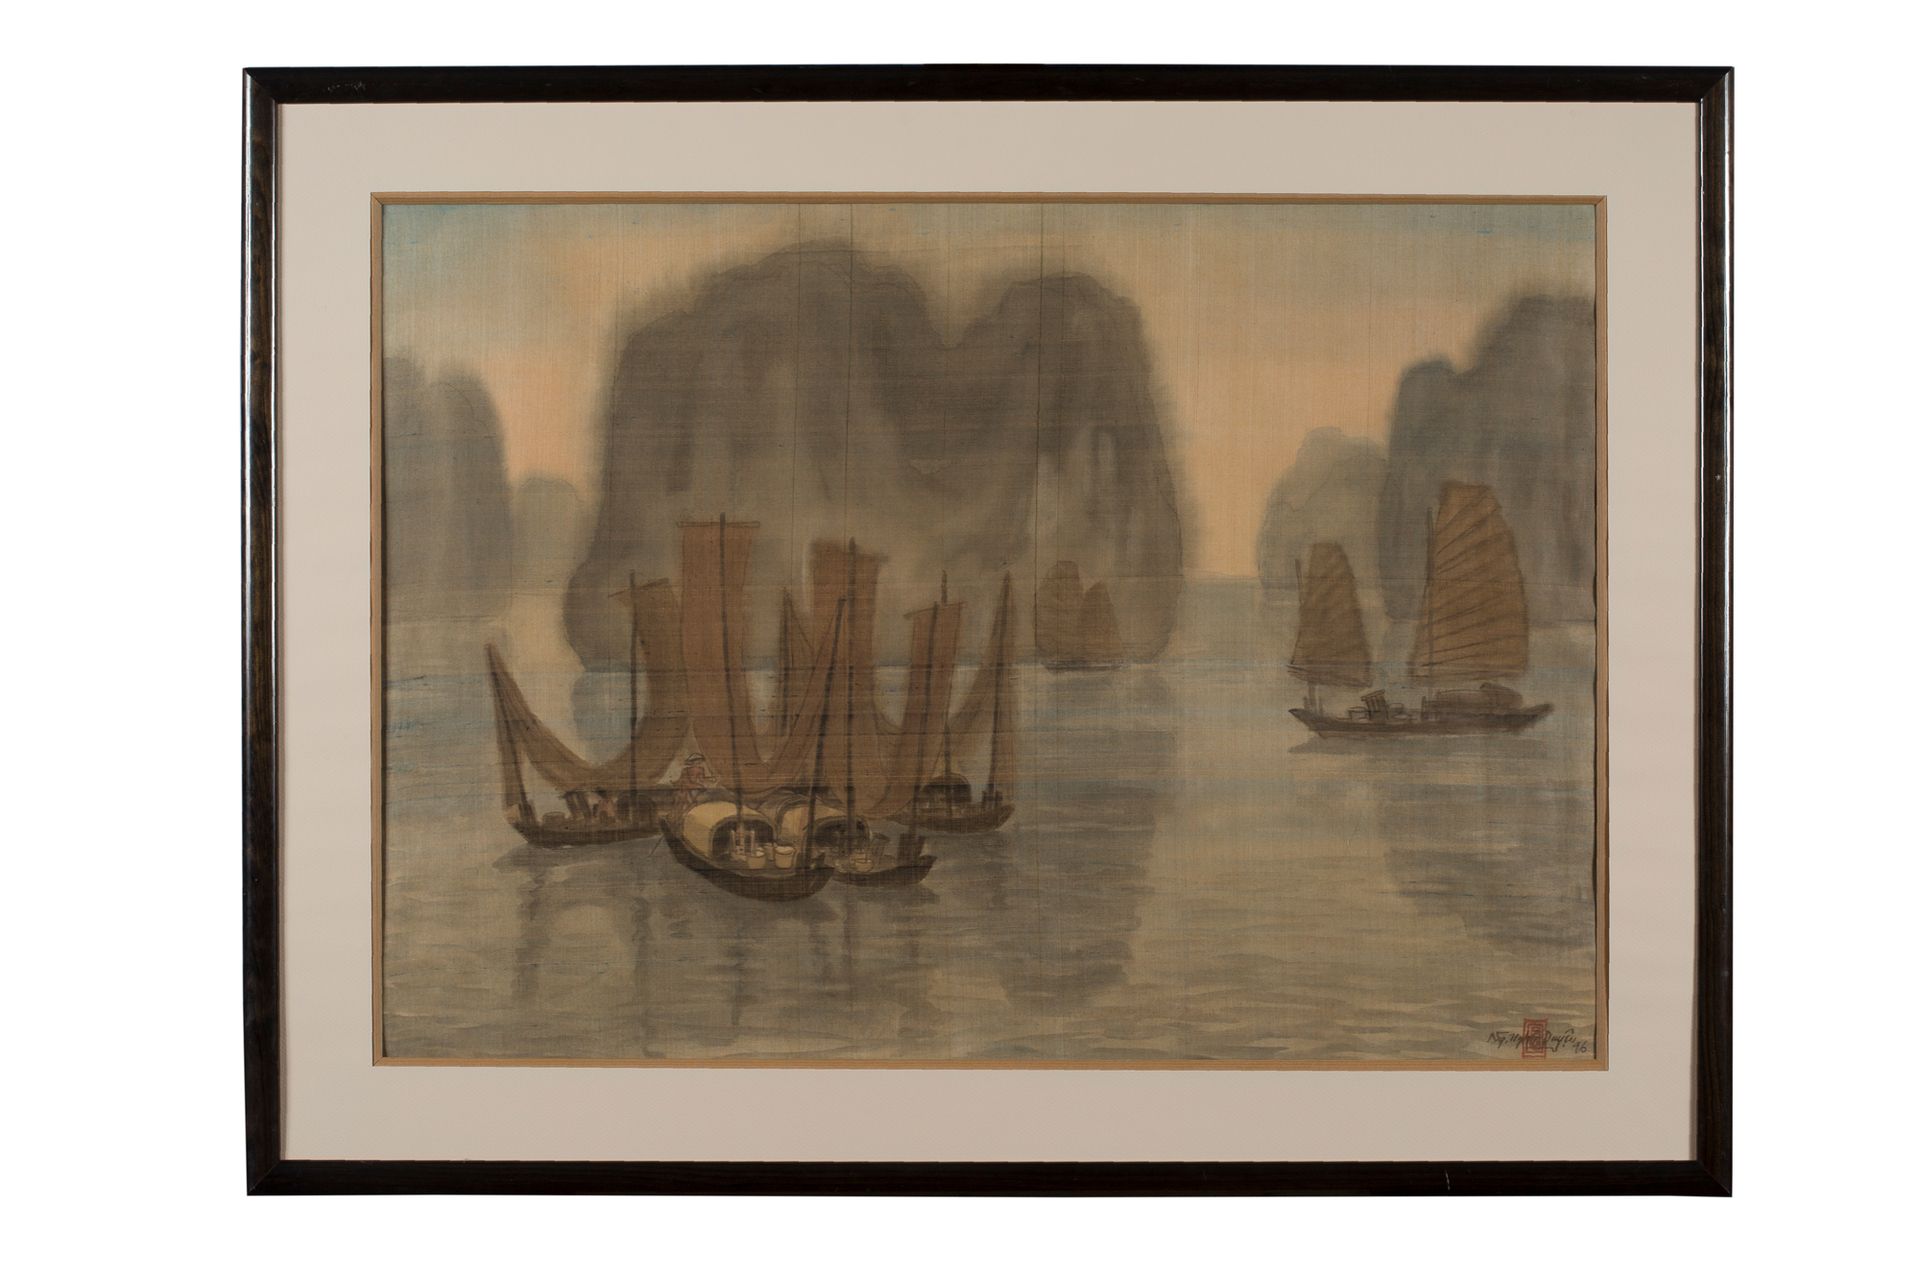 NGUYEN NGHIA DUYEN (né en 1943) 海湾里的强克和舢板，1996年
丝绸上的水墨和色彩，右下方有签名和日期
49,5 x 68 cm&hellip;